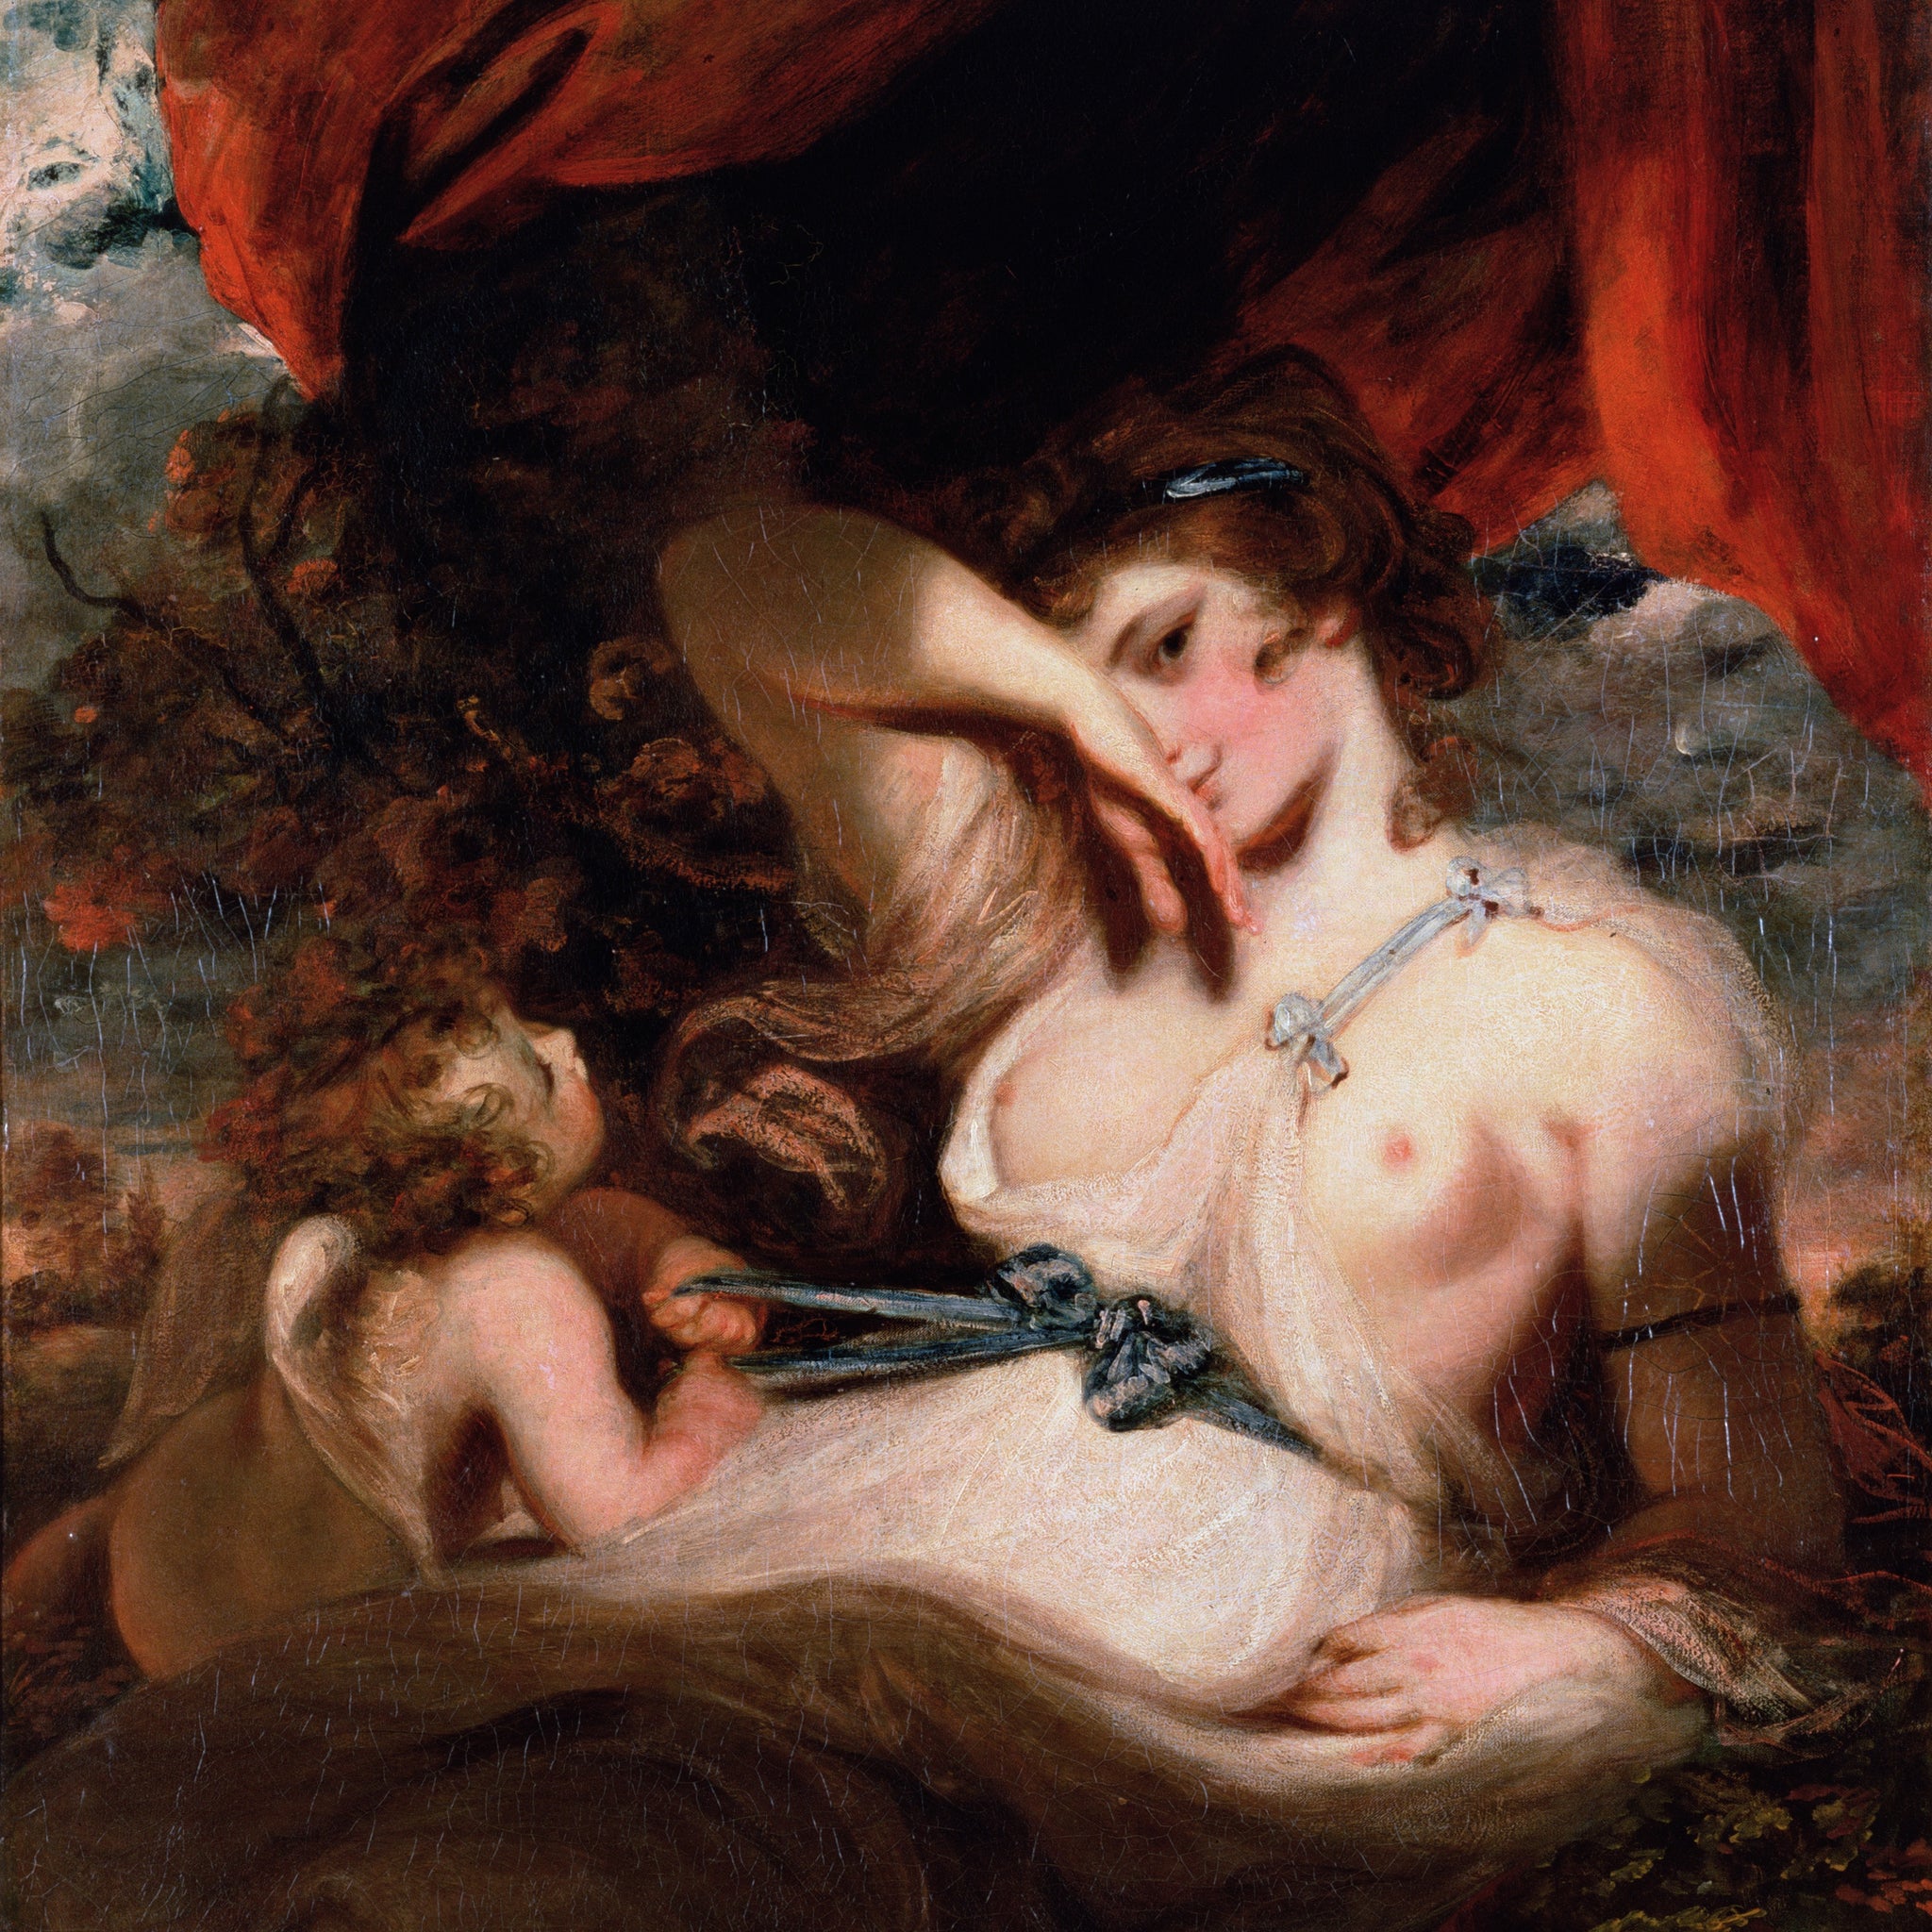 Cupidon défaisant la gaine de Vénus - Joshua Reynolds